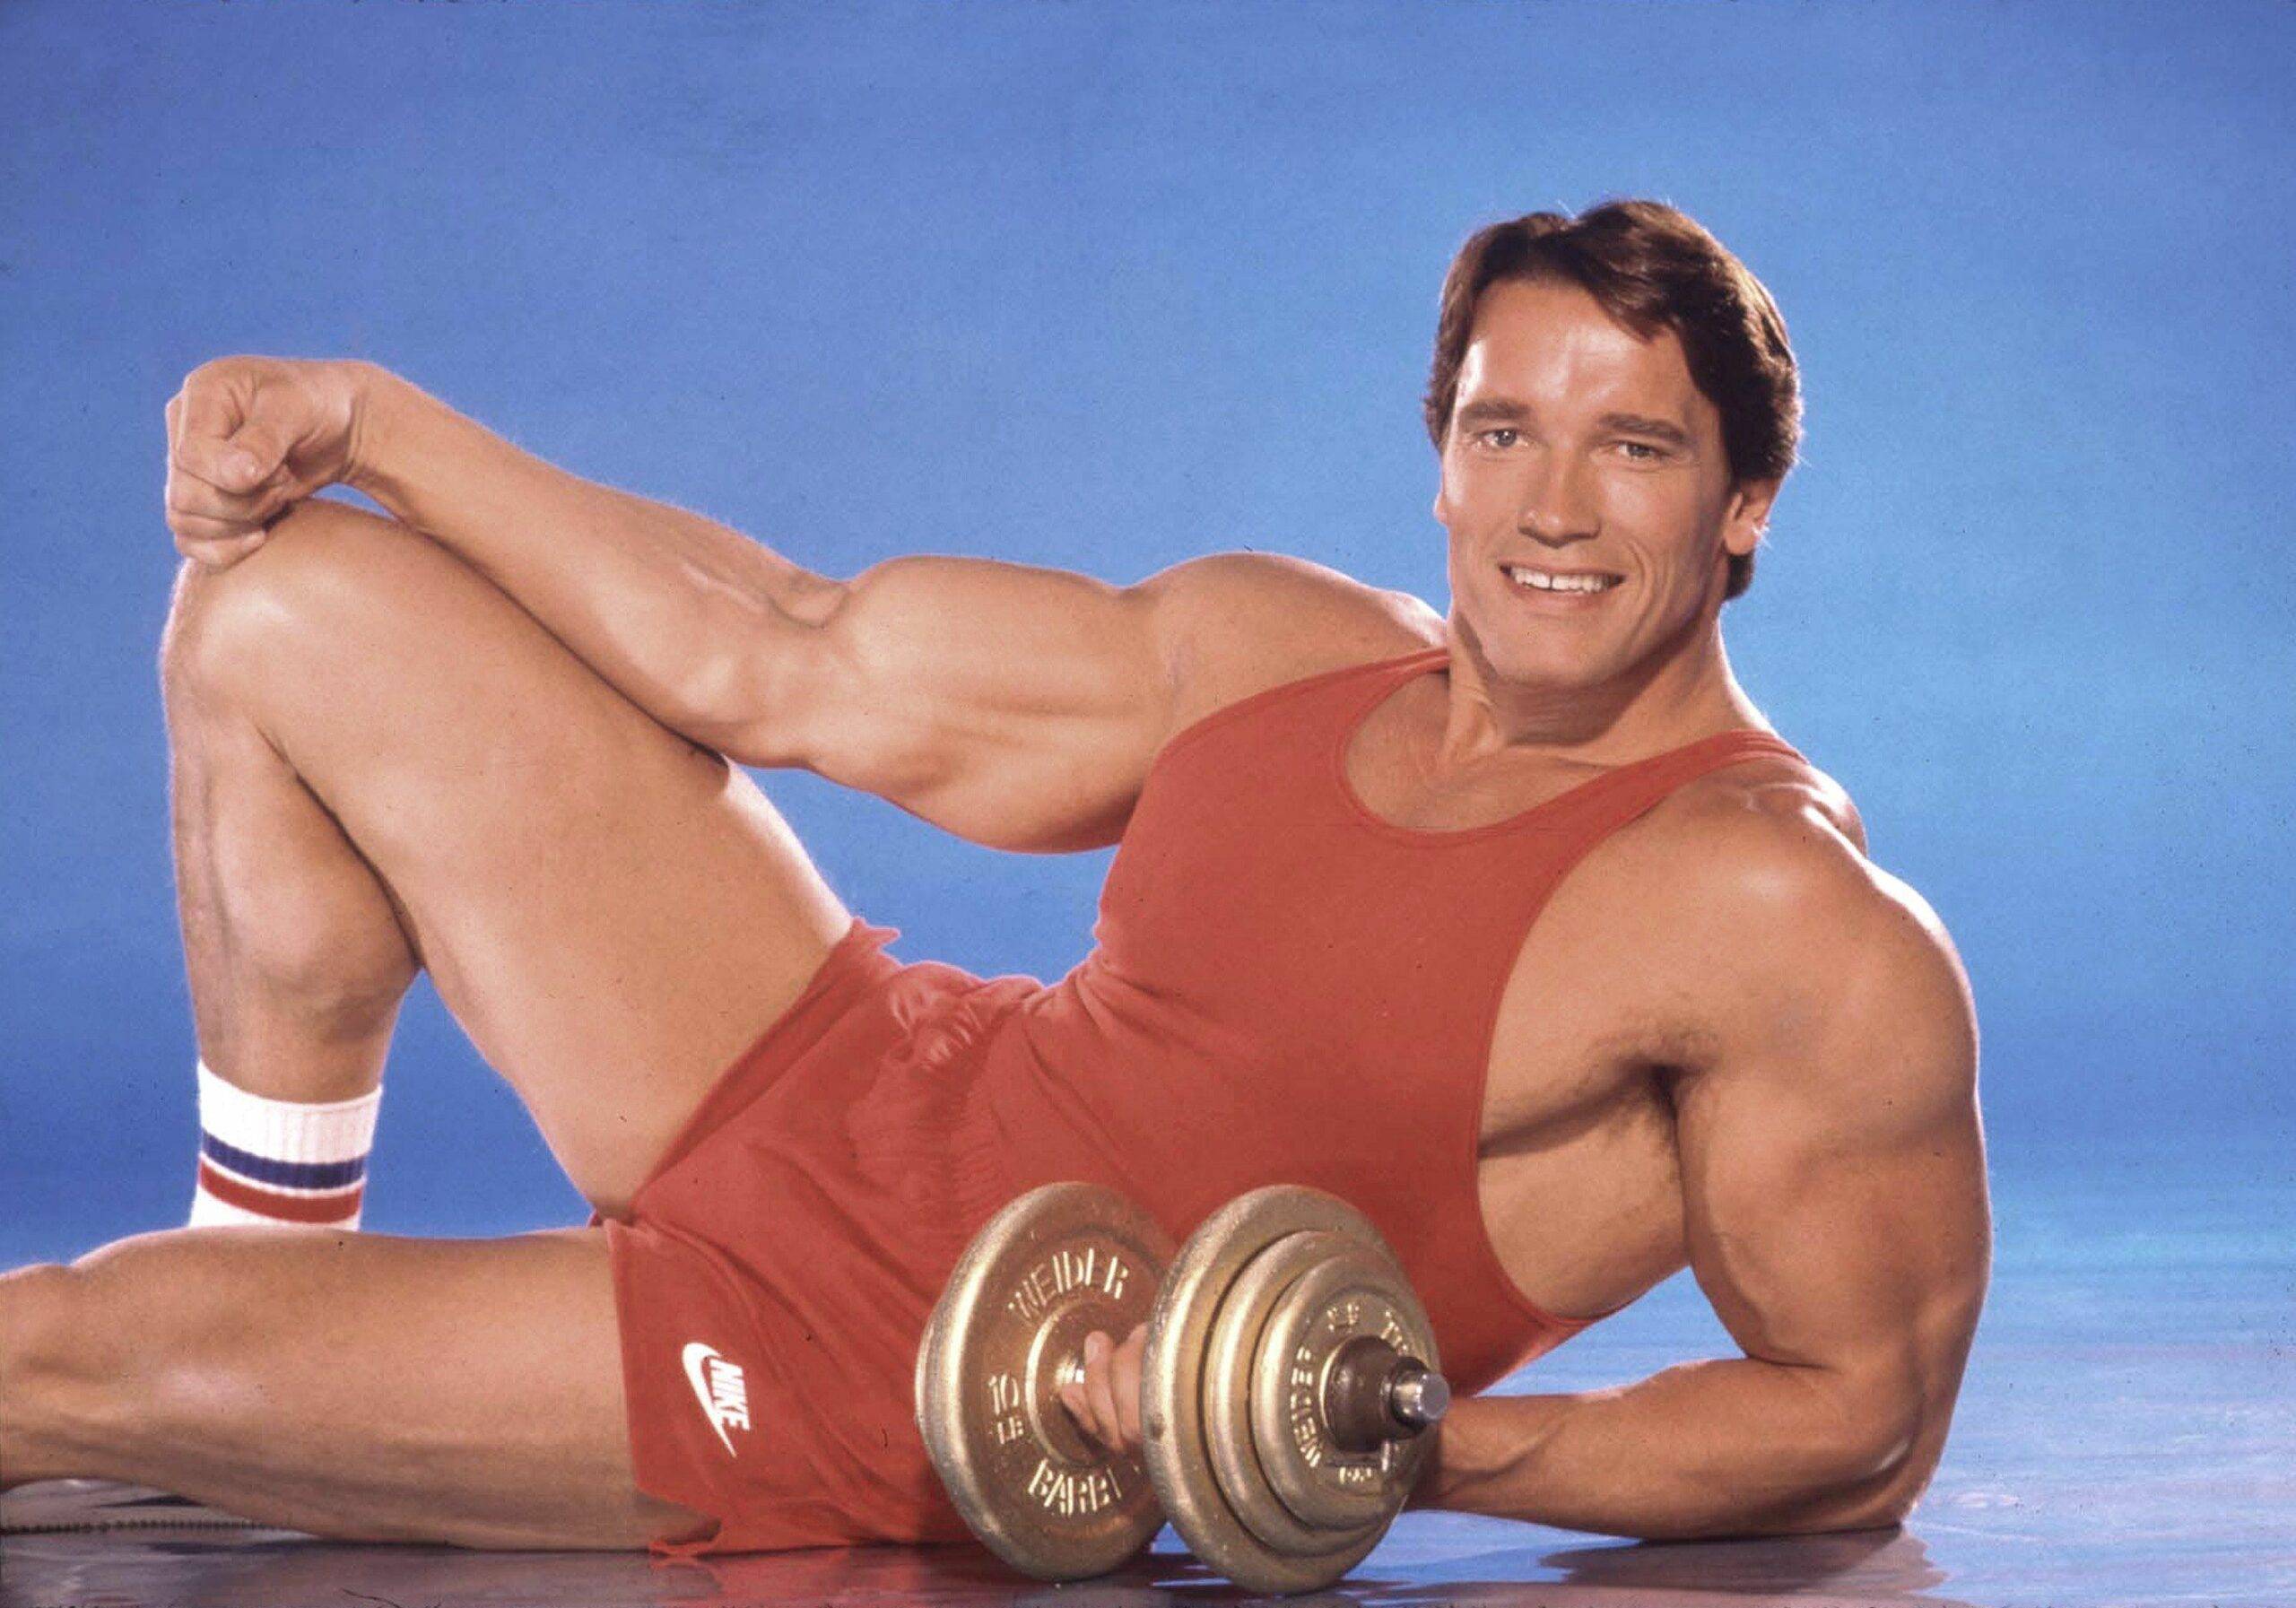 Arnold Schwarzenegger a fost supus unei noi intervenții chirurgicale la inimă. Cum se simte acum actorul?